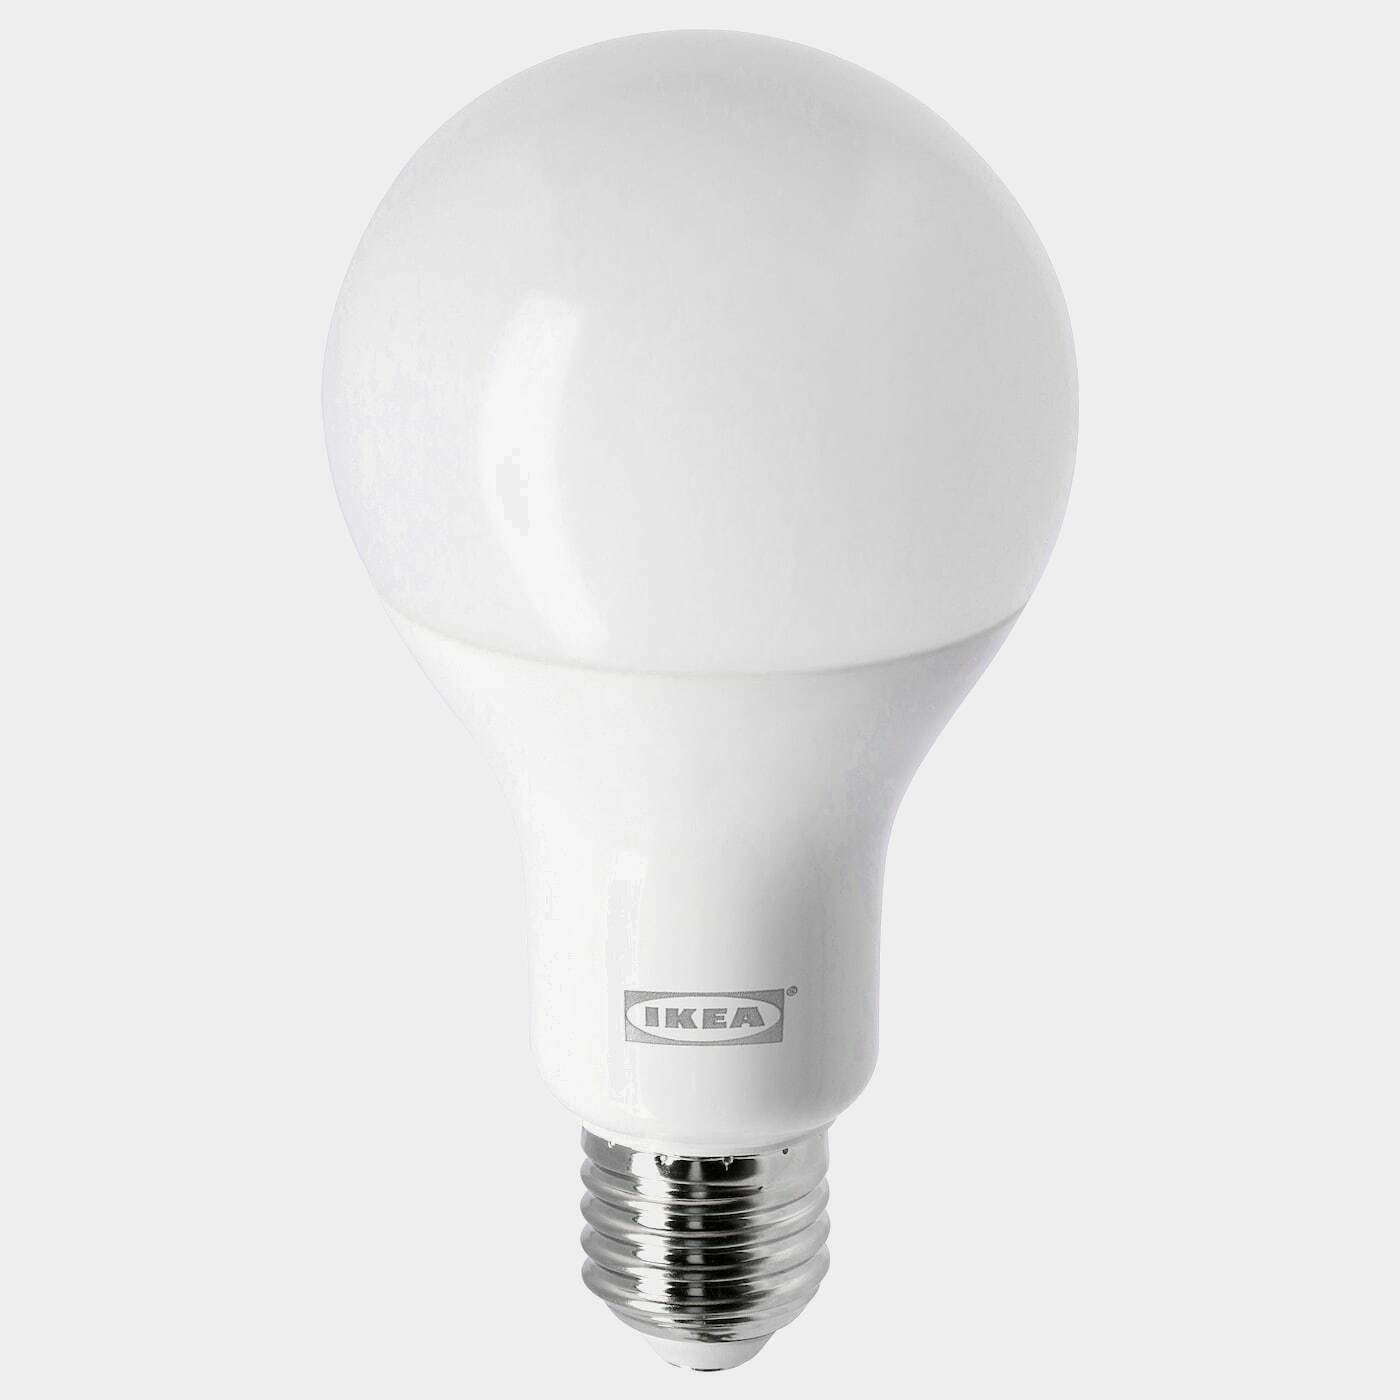 LEDARE LED-Leuchtmittel E27 1521 lm  -  - Beleuchtung Ideen für dein Zuhause von Home Trends. Beleuchtung Trends von Social Media Influencer für dein Skandi Zuhause.